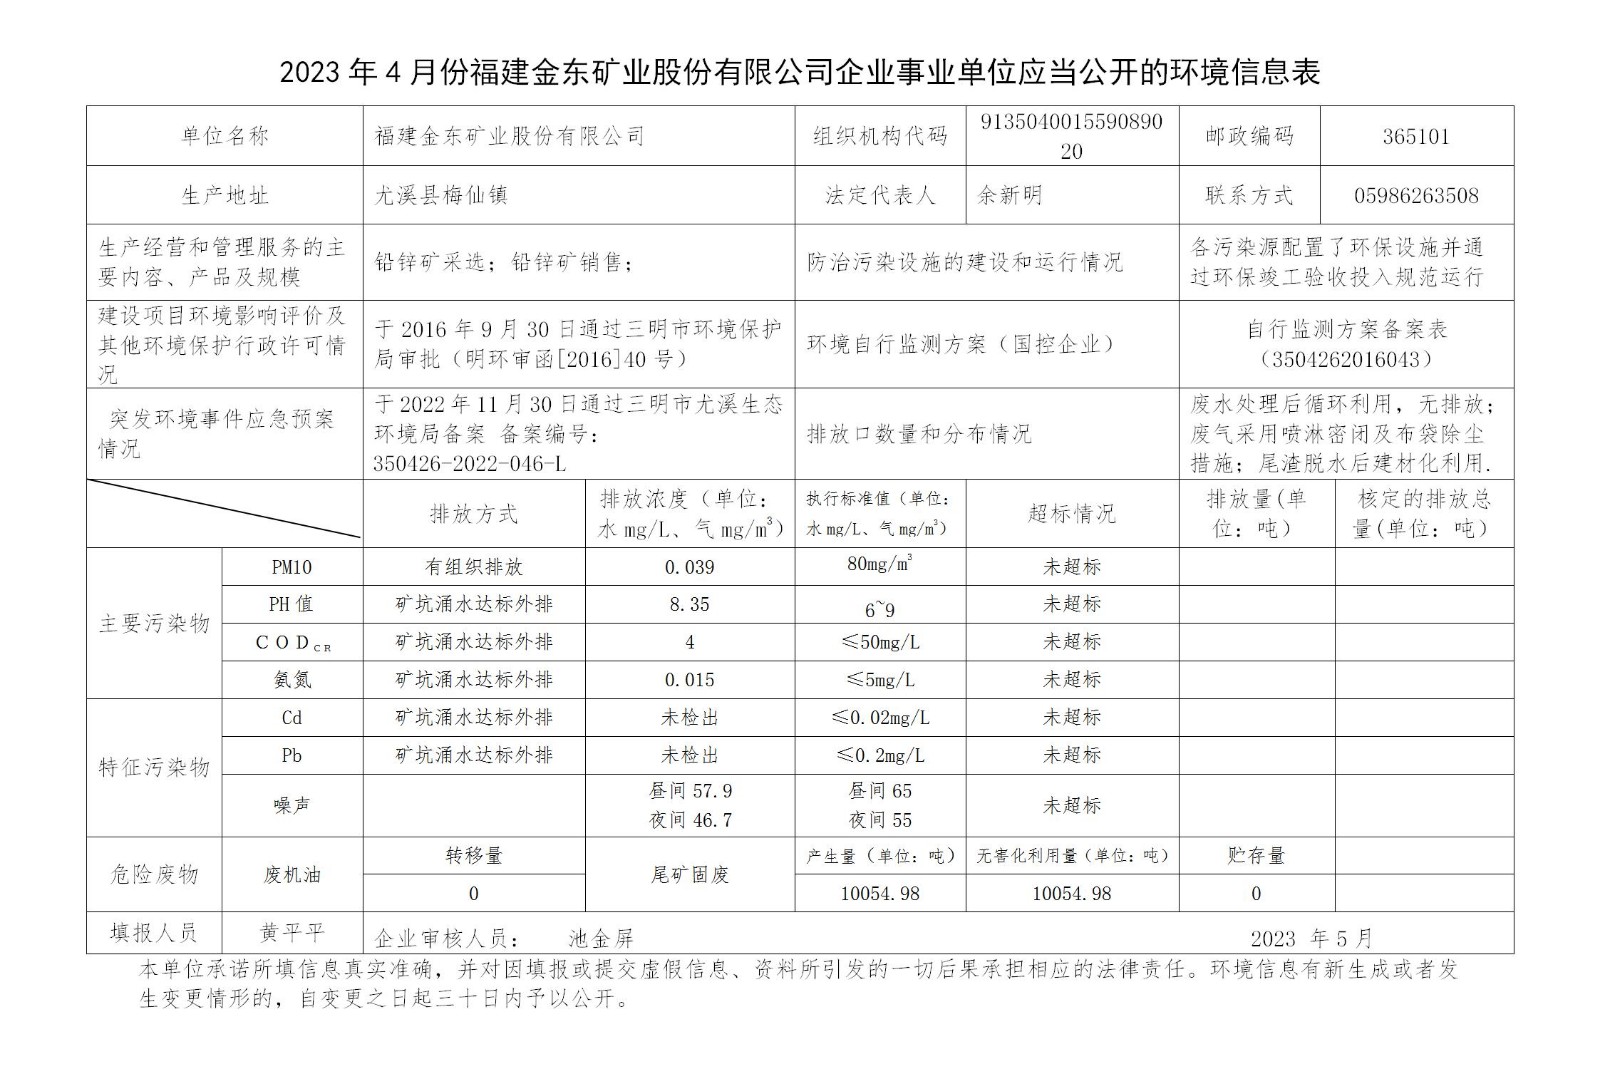 2023年4月份IM电竞「中国」官方网站企业事业单位应当公开的环境信息表_01.jpg